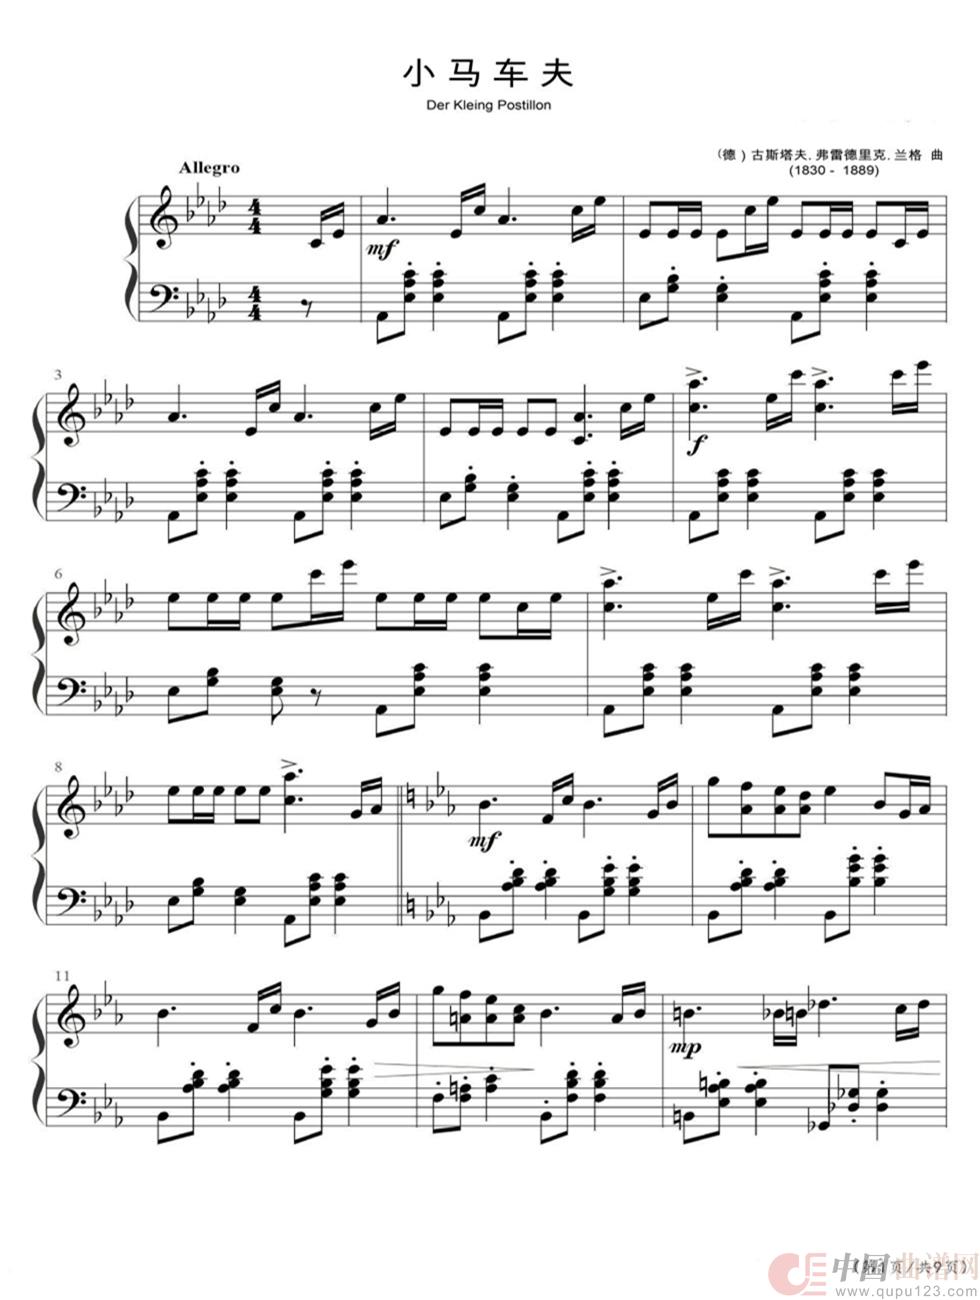 《小马车夫》钢琴曲谱图分享